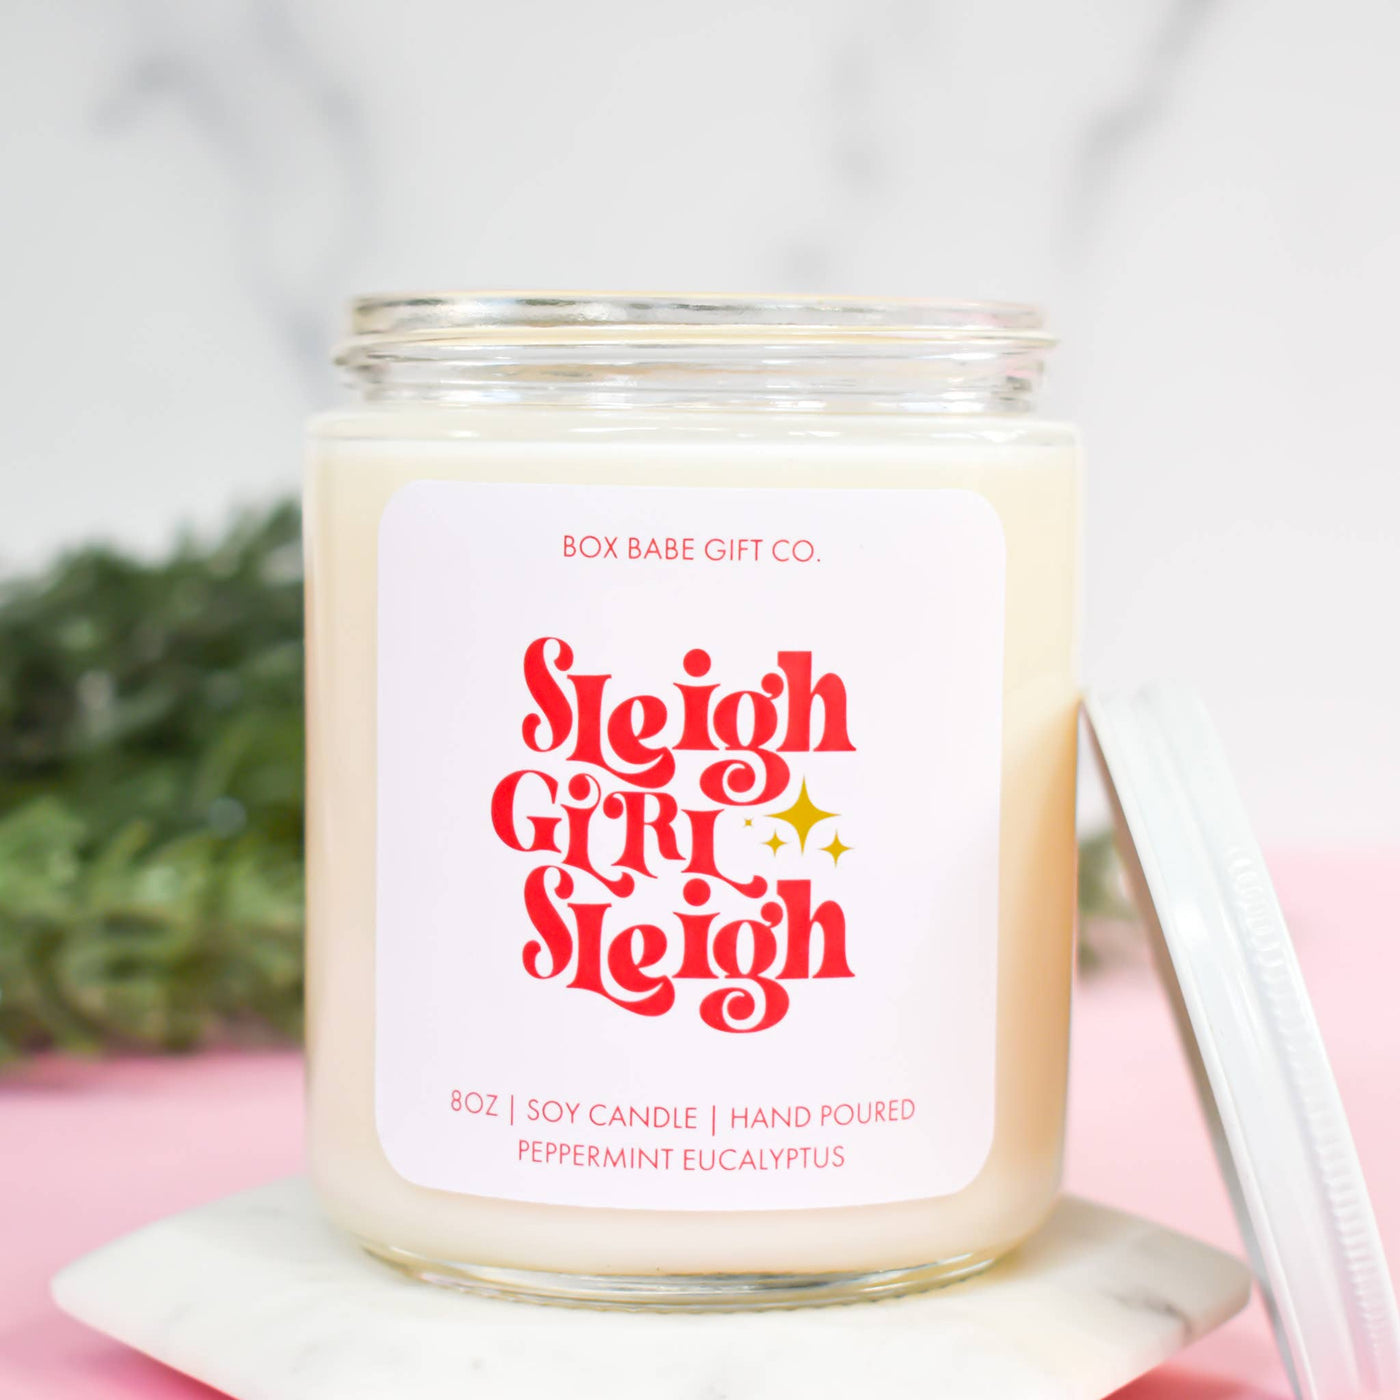 Sleigh Girl Sleigh Candle | Christmas Holiday Candle